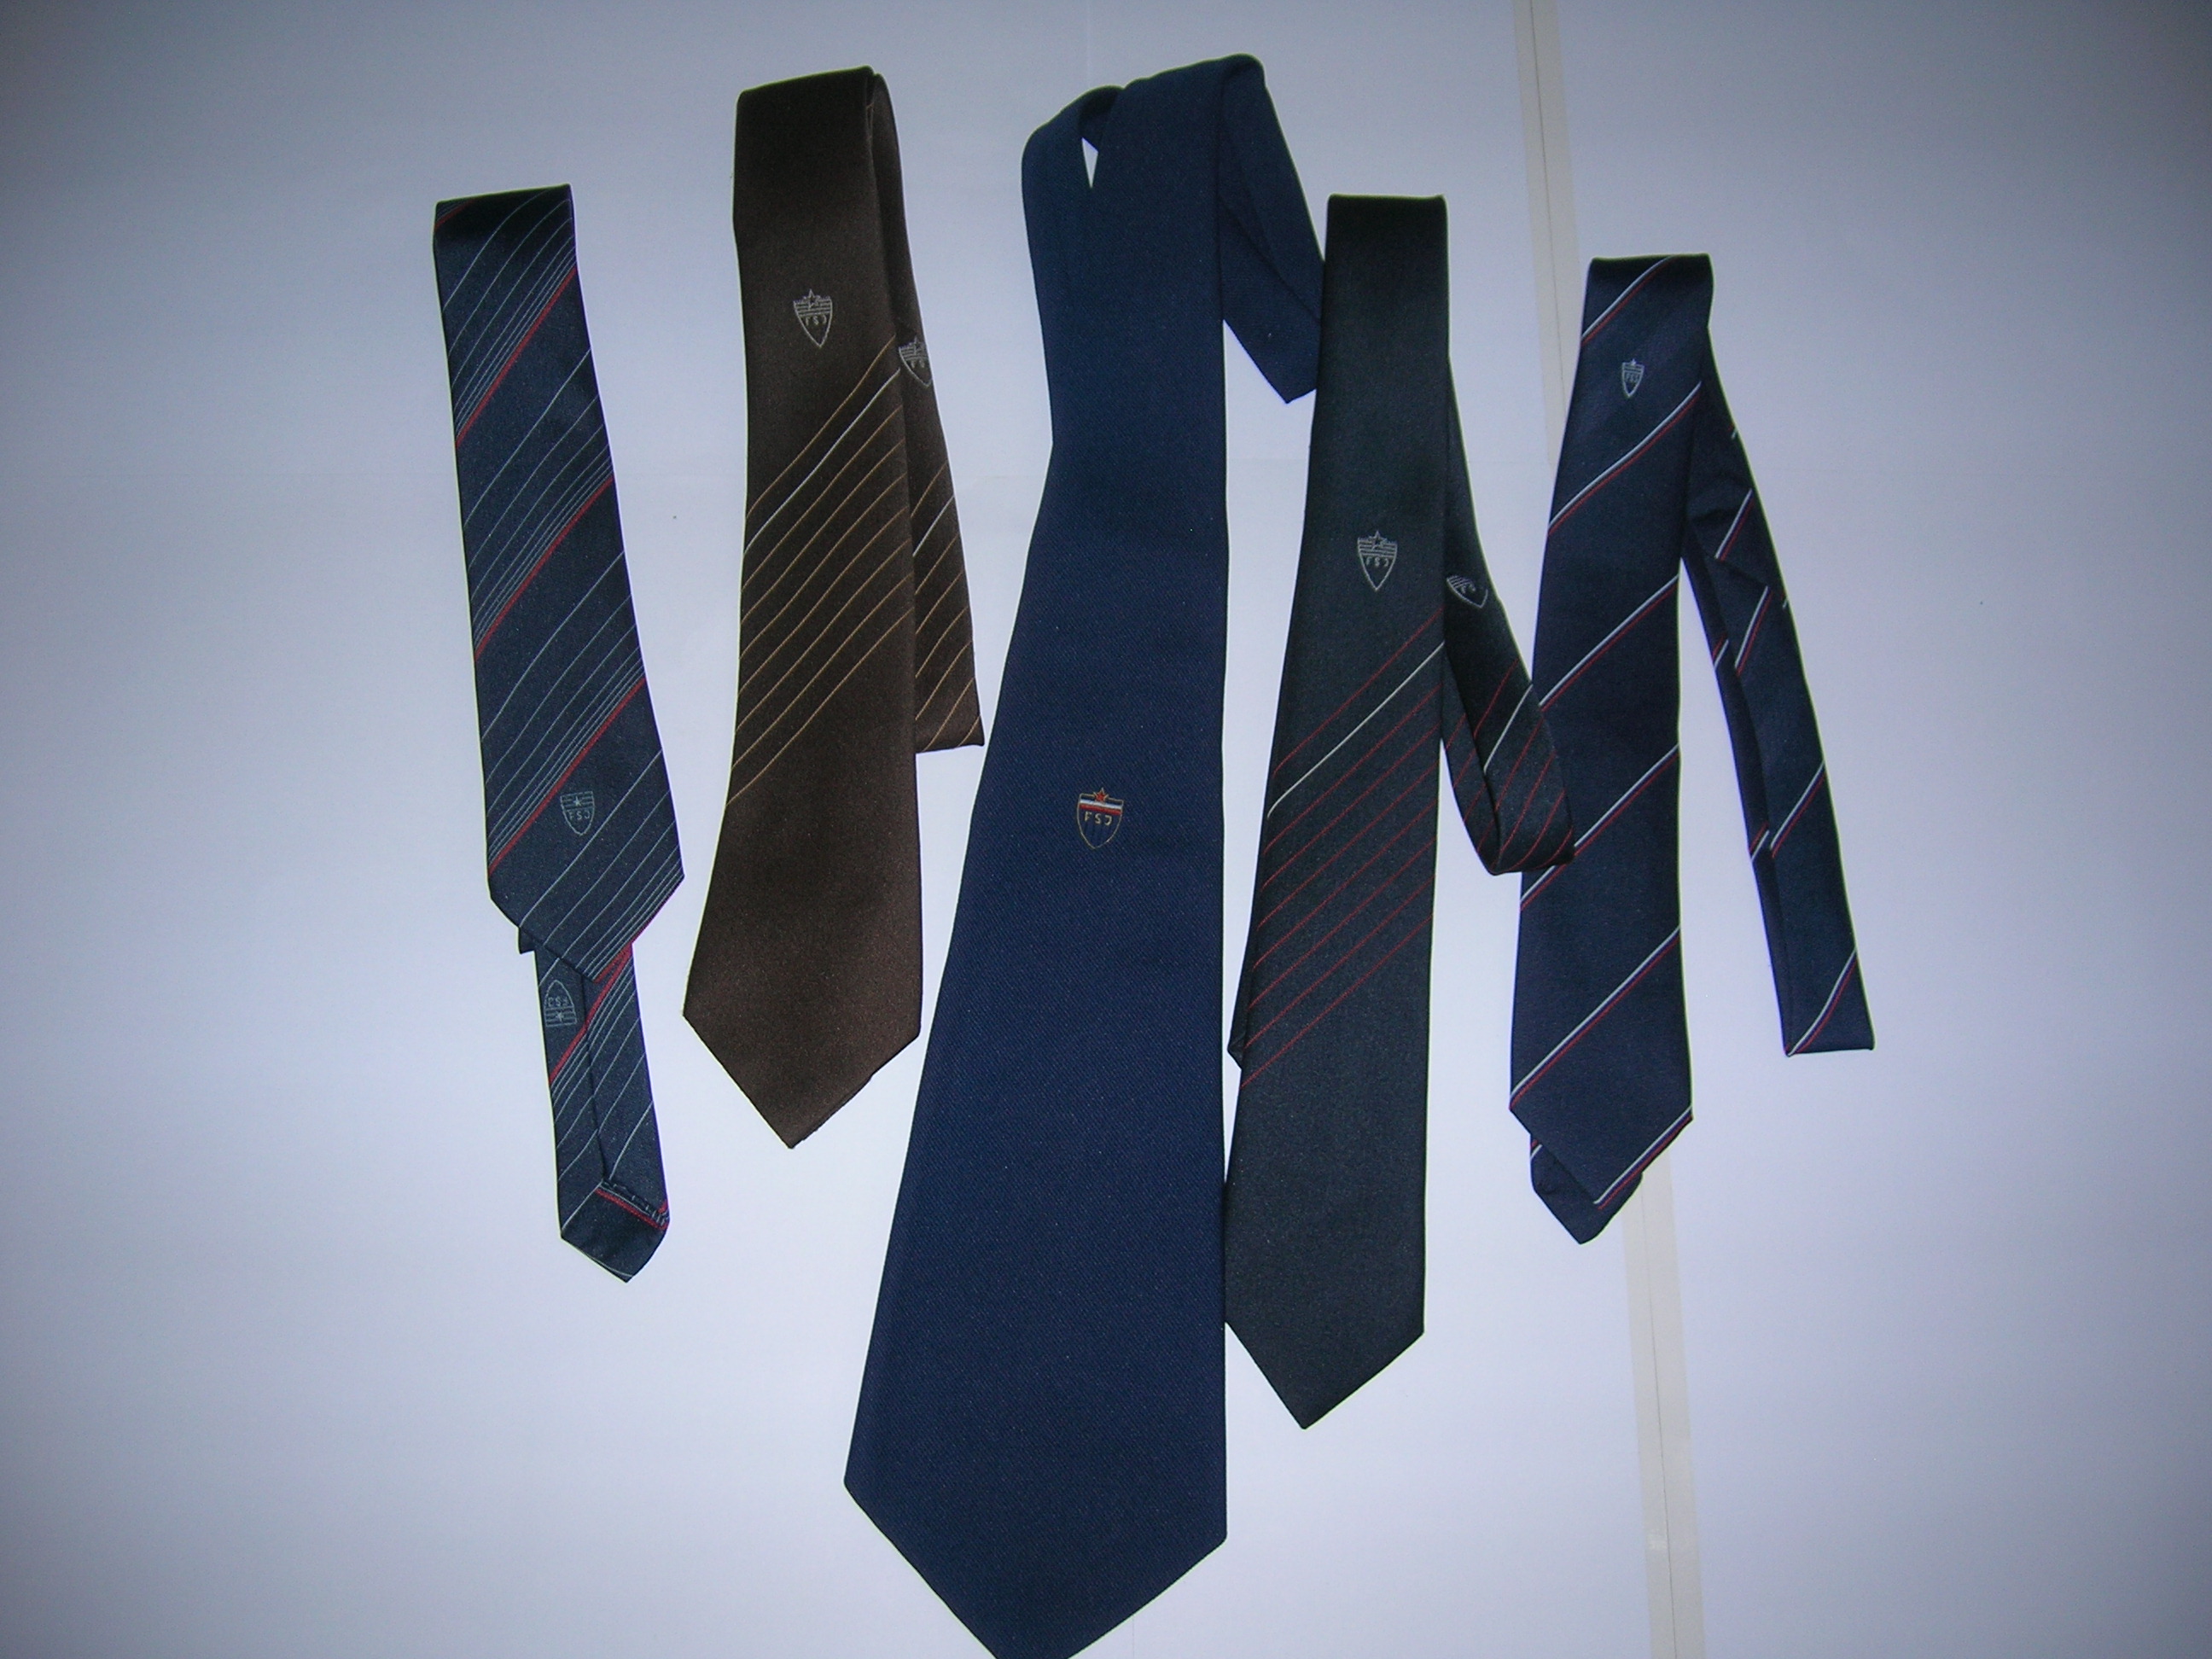 Cravatte della nazionale, Jugoslavia fine anni 80